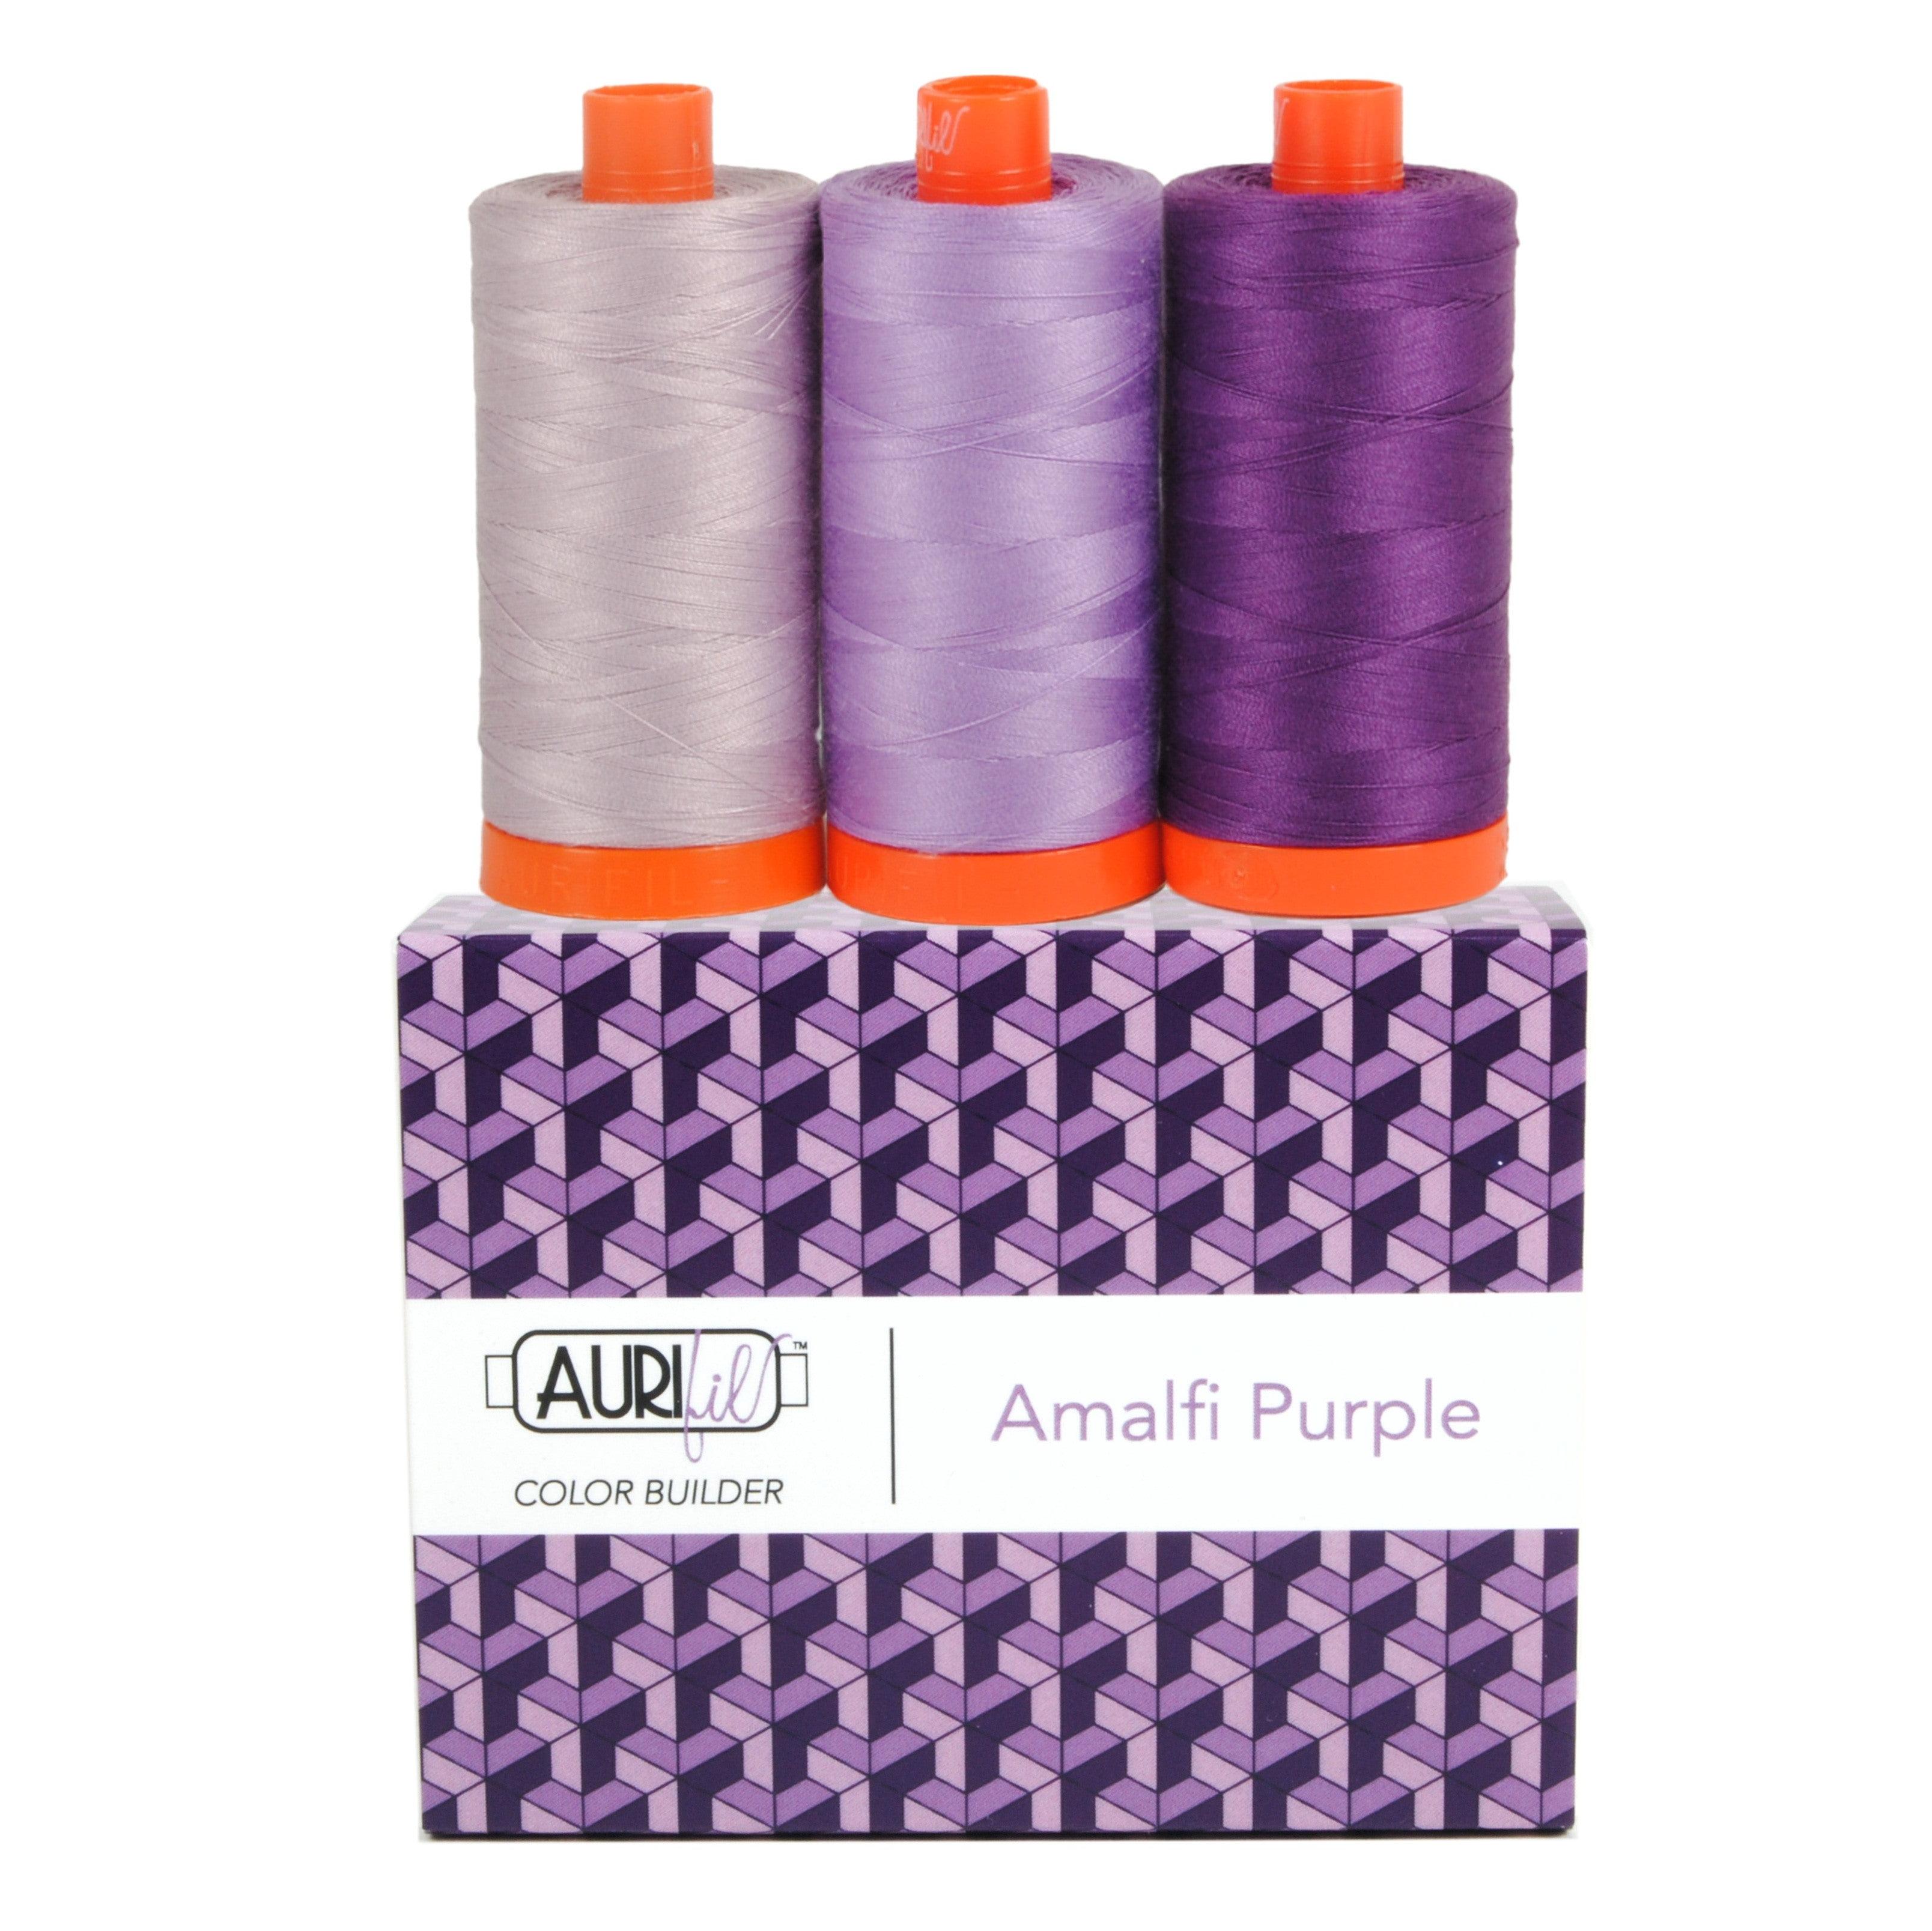 Color Builder 50wt Amalfi Purple 3 pc Set-Aurifil-My Favorite Quilt Store